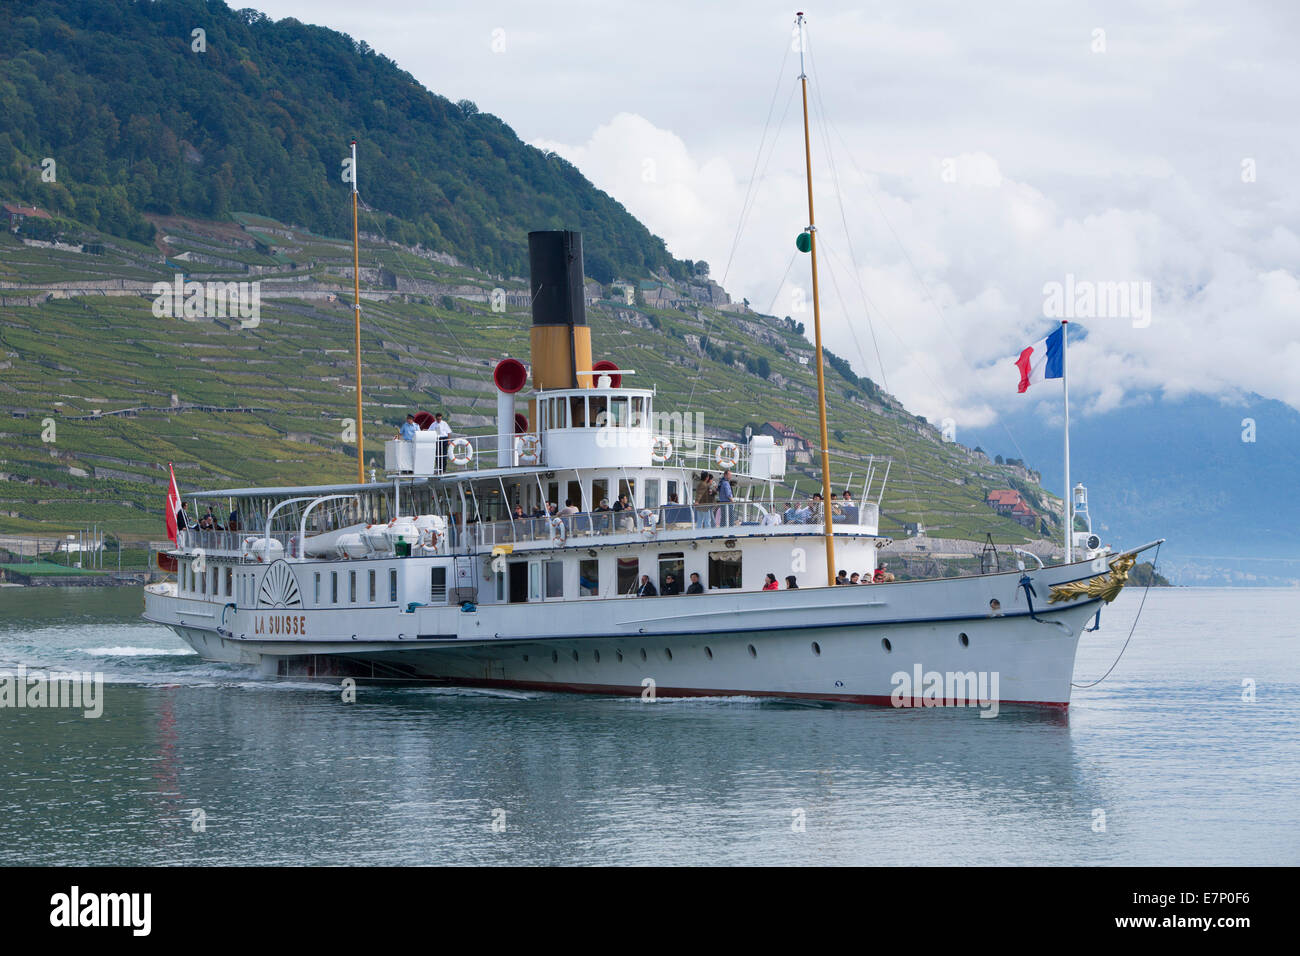 Il lago di Ginevra, steamboat, Lac Leman, steamboat, nave, barca, navi, barche, lago, laghi, Canton, VD, Vaud, Svizzera occidentale, romana Foto Stock